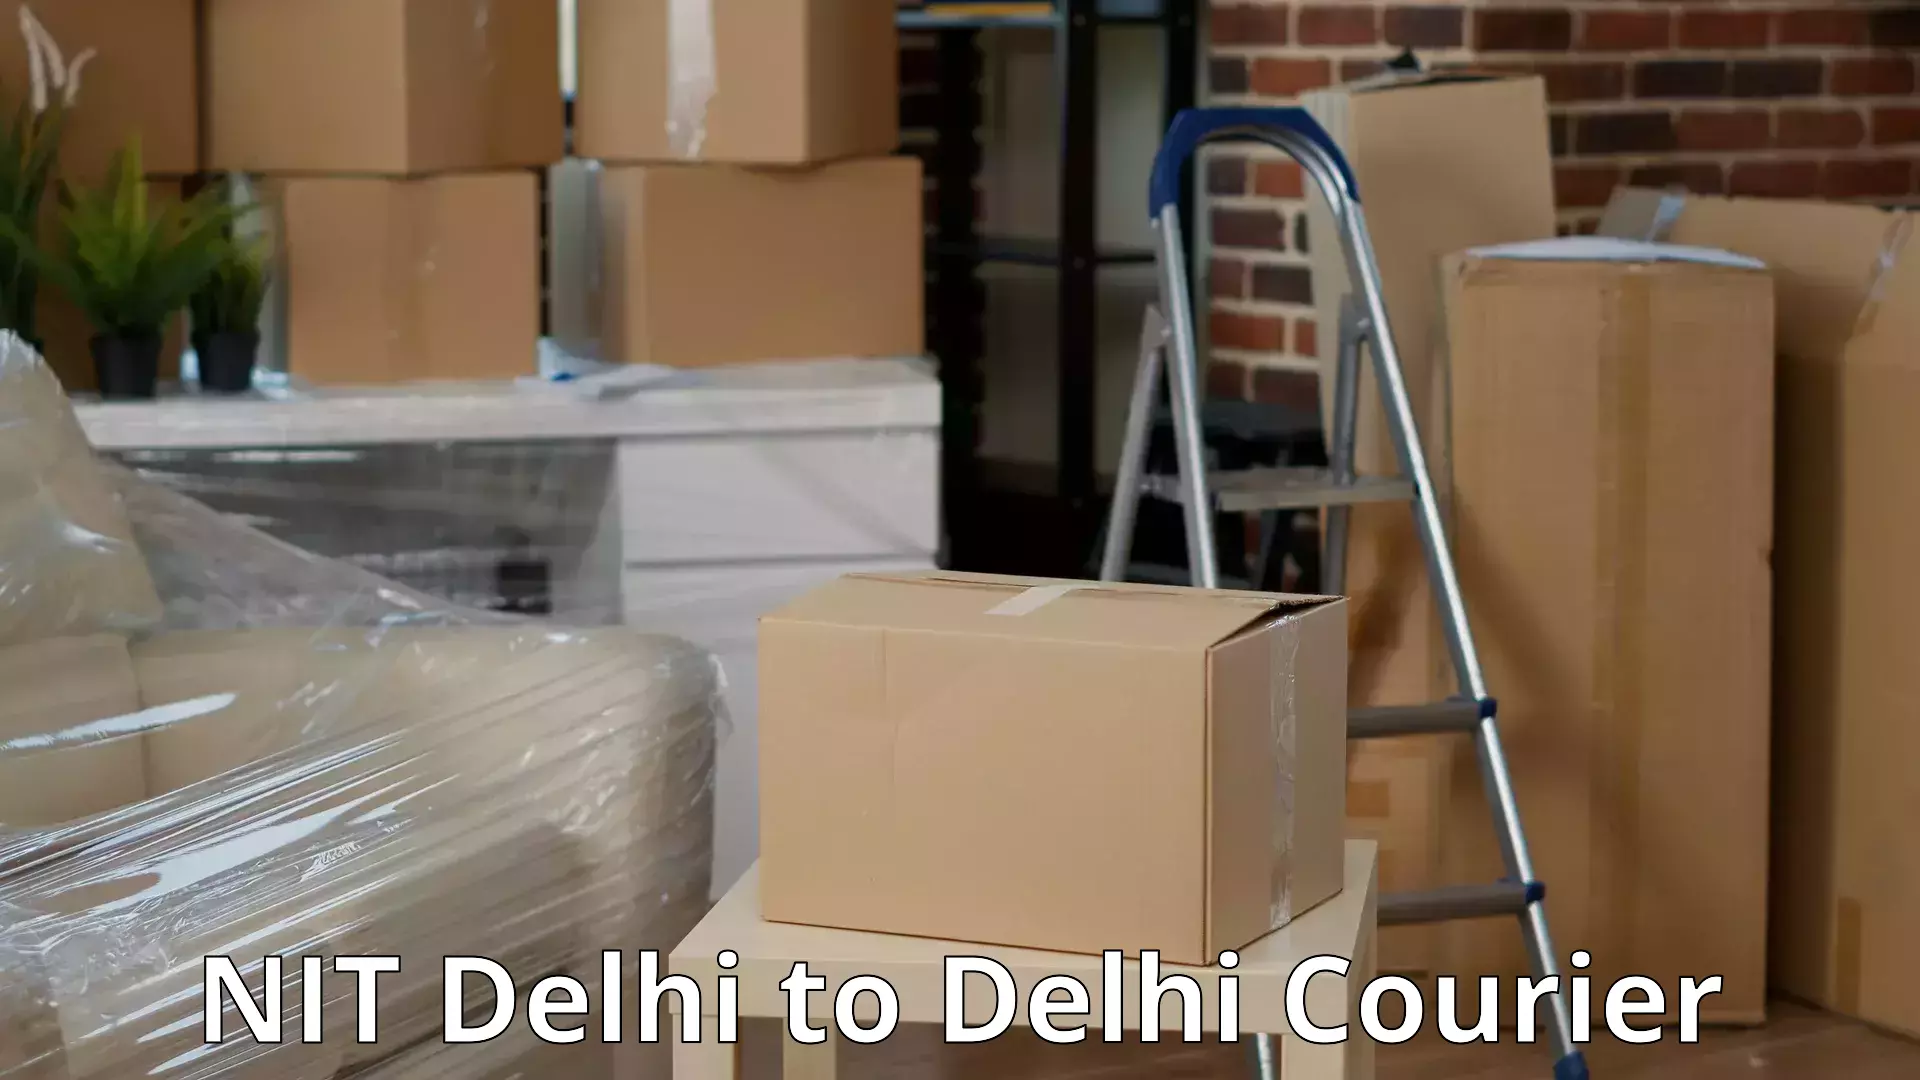 Advanced household movers NIT Delhi to Delhi